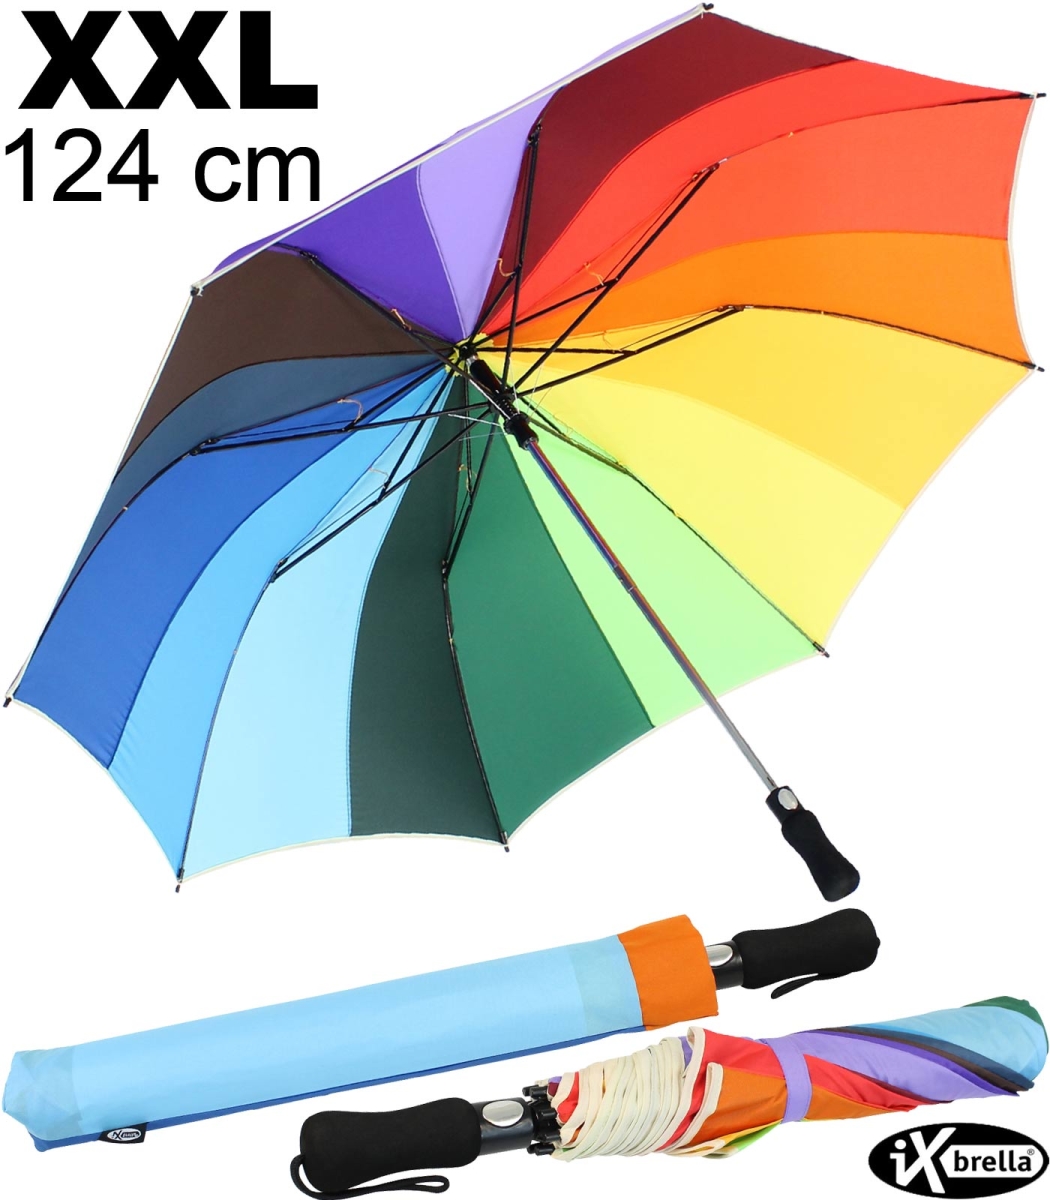 Regenschirm XXL Regenbogen Stockschirm Golfschirm Damen groß bunt 130 cm